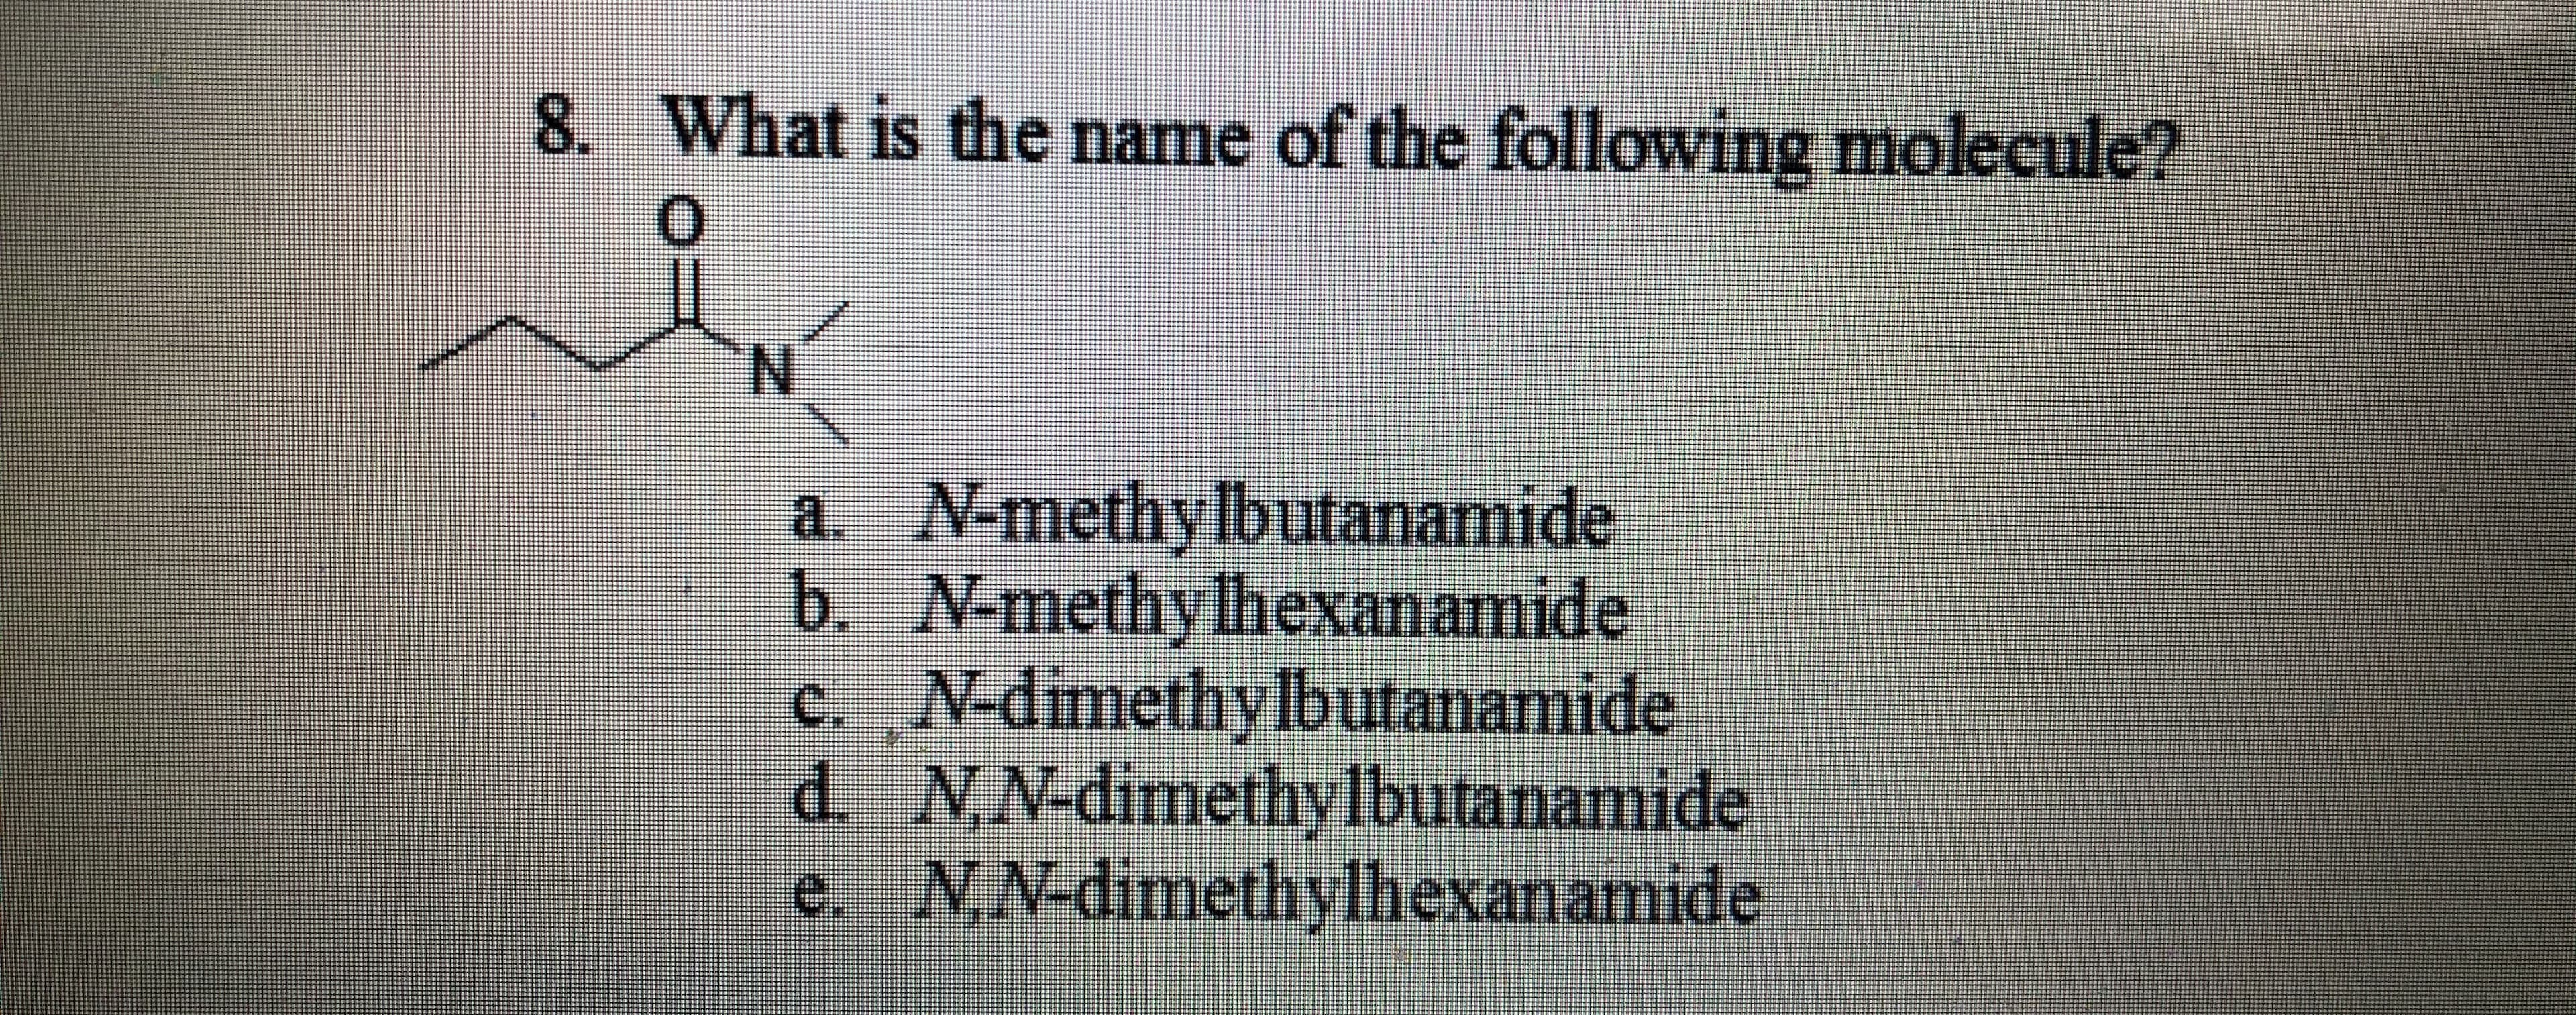 8. What is the name of the following molecule?
a. N-methylbutanamide
b. N-methy lhexanamide
c. N-dimethylbutanamide
d. NN-dimethylbutanamide
e. NN-dimethylhexanamide
